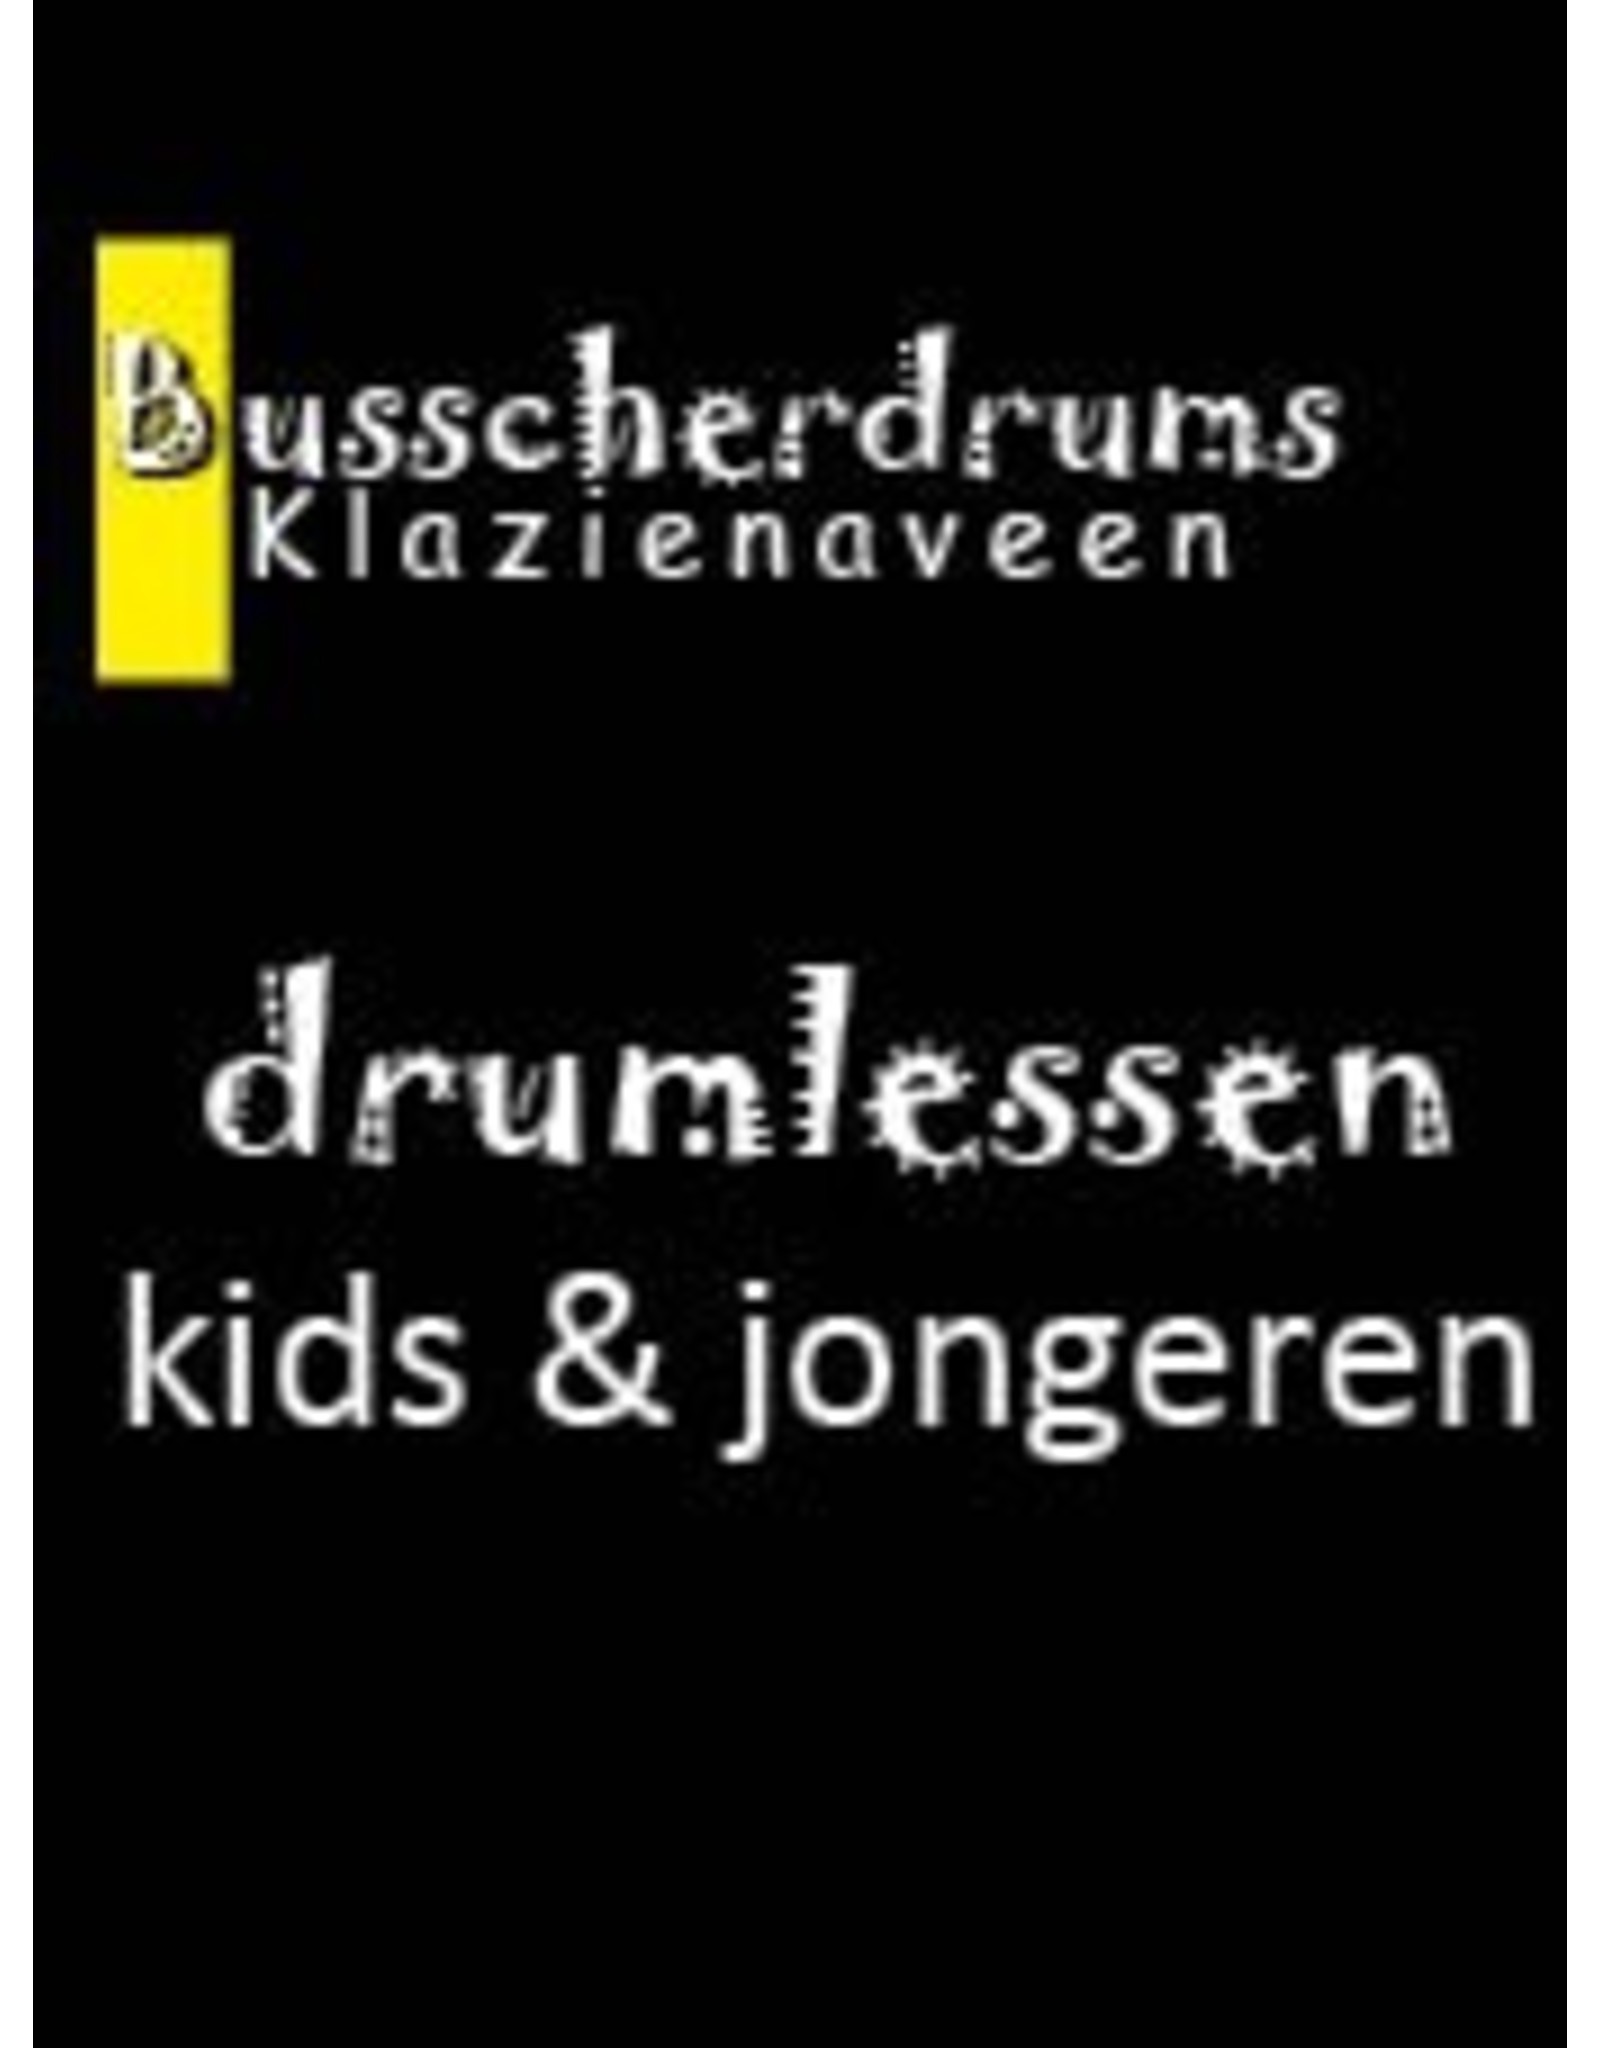 Busscherdrums Drumlessen FLEX-10Lessenkaart 30 minuten individuele drumlessen kids & jongeren 901